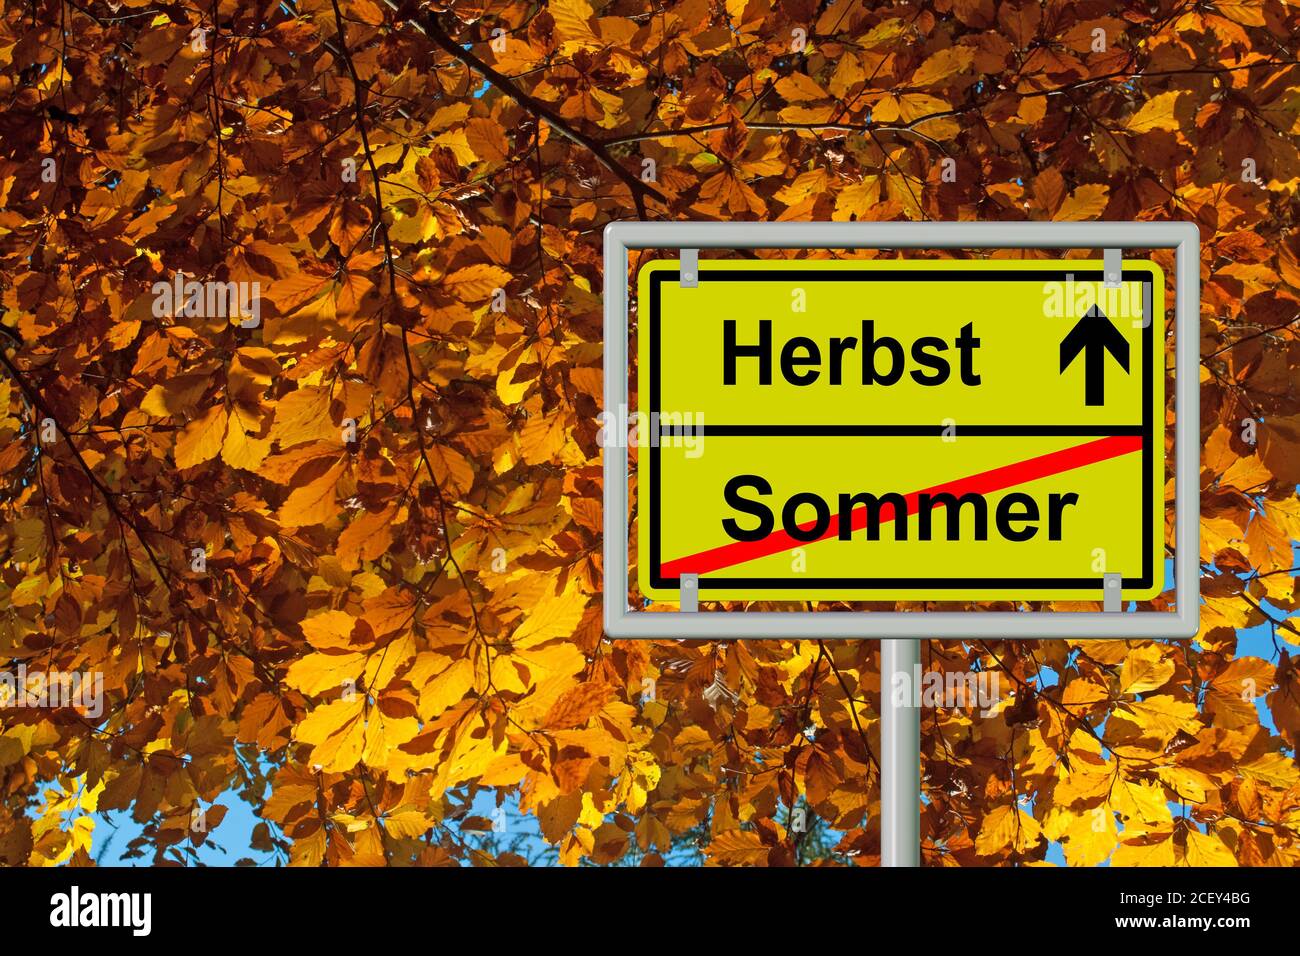 Segnale stradale, fine estate e inizio autunno, sommer, herbst Foto Stock